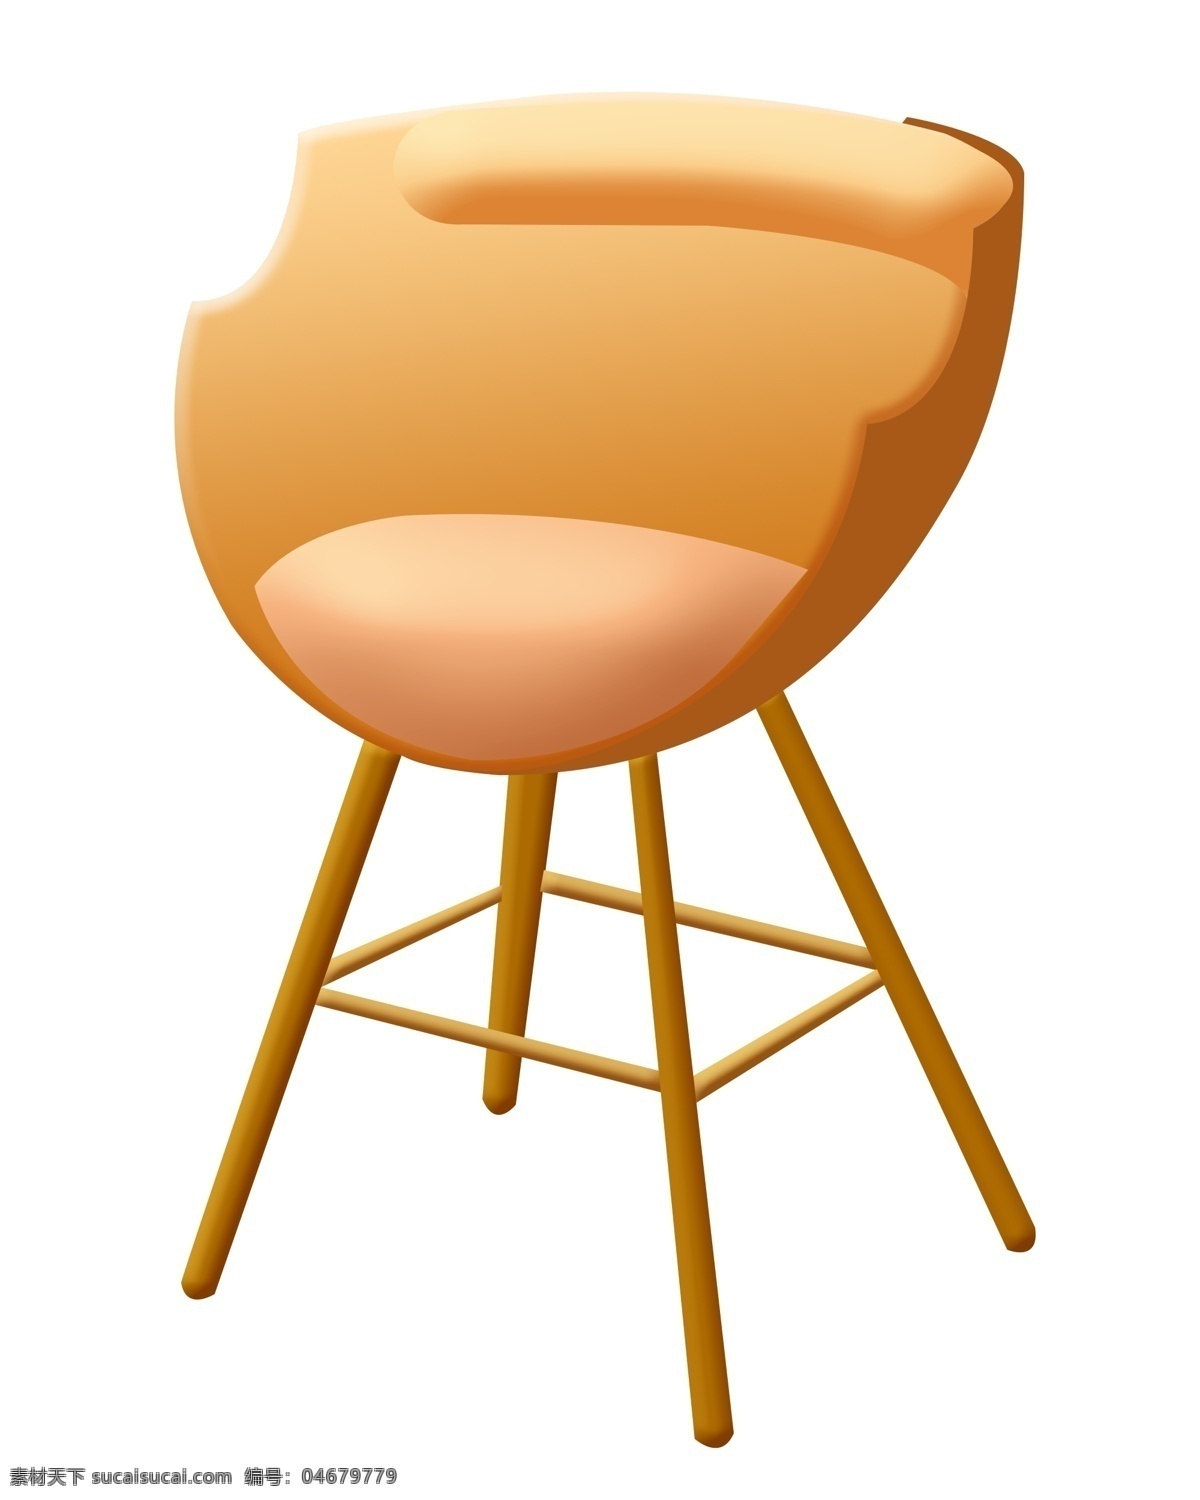 简约 木质 椅子 插图 卡通椅子 酒吧 高脚椅子 圆形椅子 简约椅子 酒吧椅子 椅子插图 木质椅子